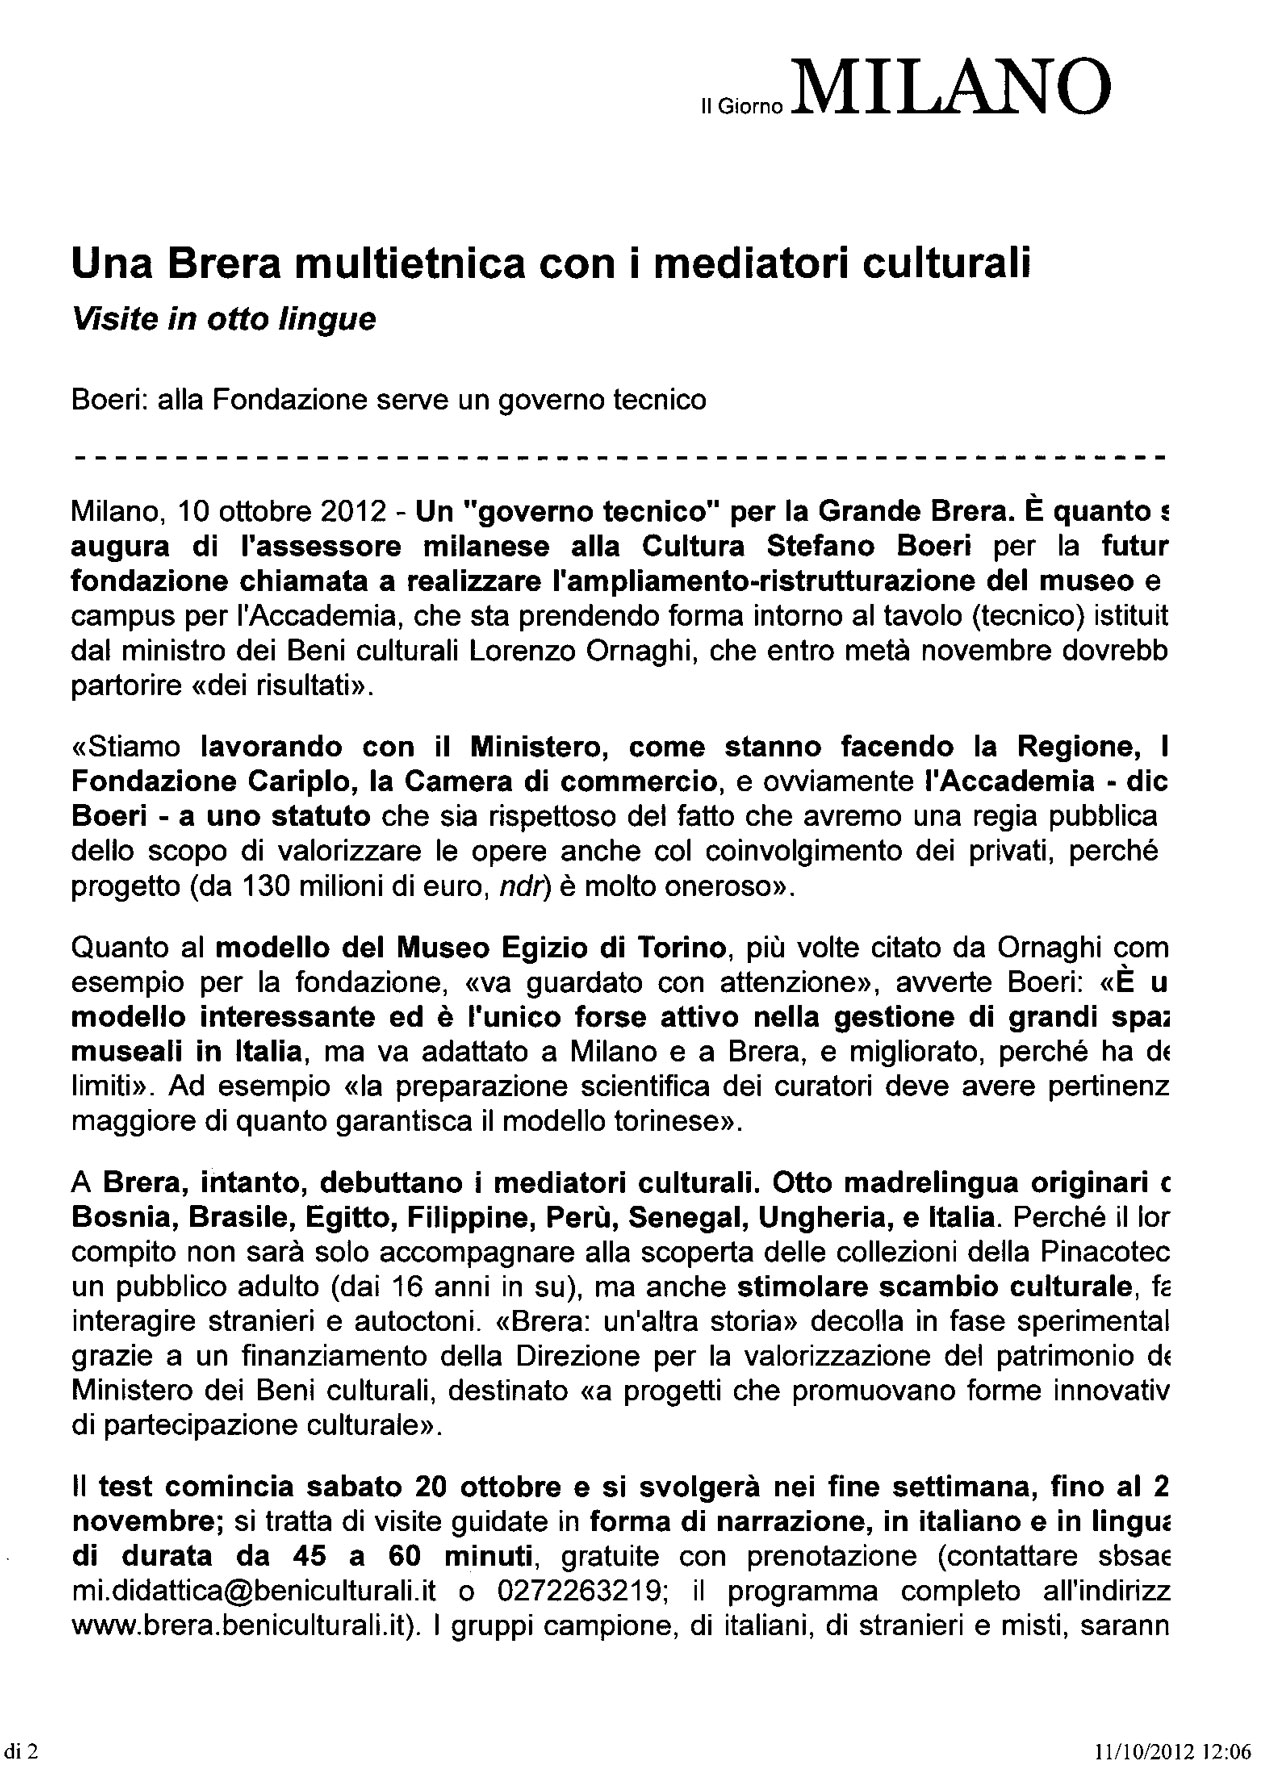 Scansione dell'articolo “Una Brera multietnica con i mediatori culturali”, Il Giorno online, 11 ottobre 2012 - pagina 1